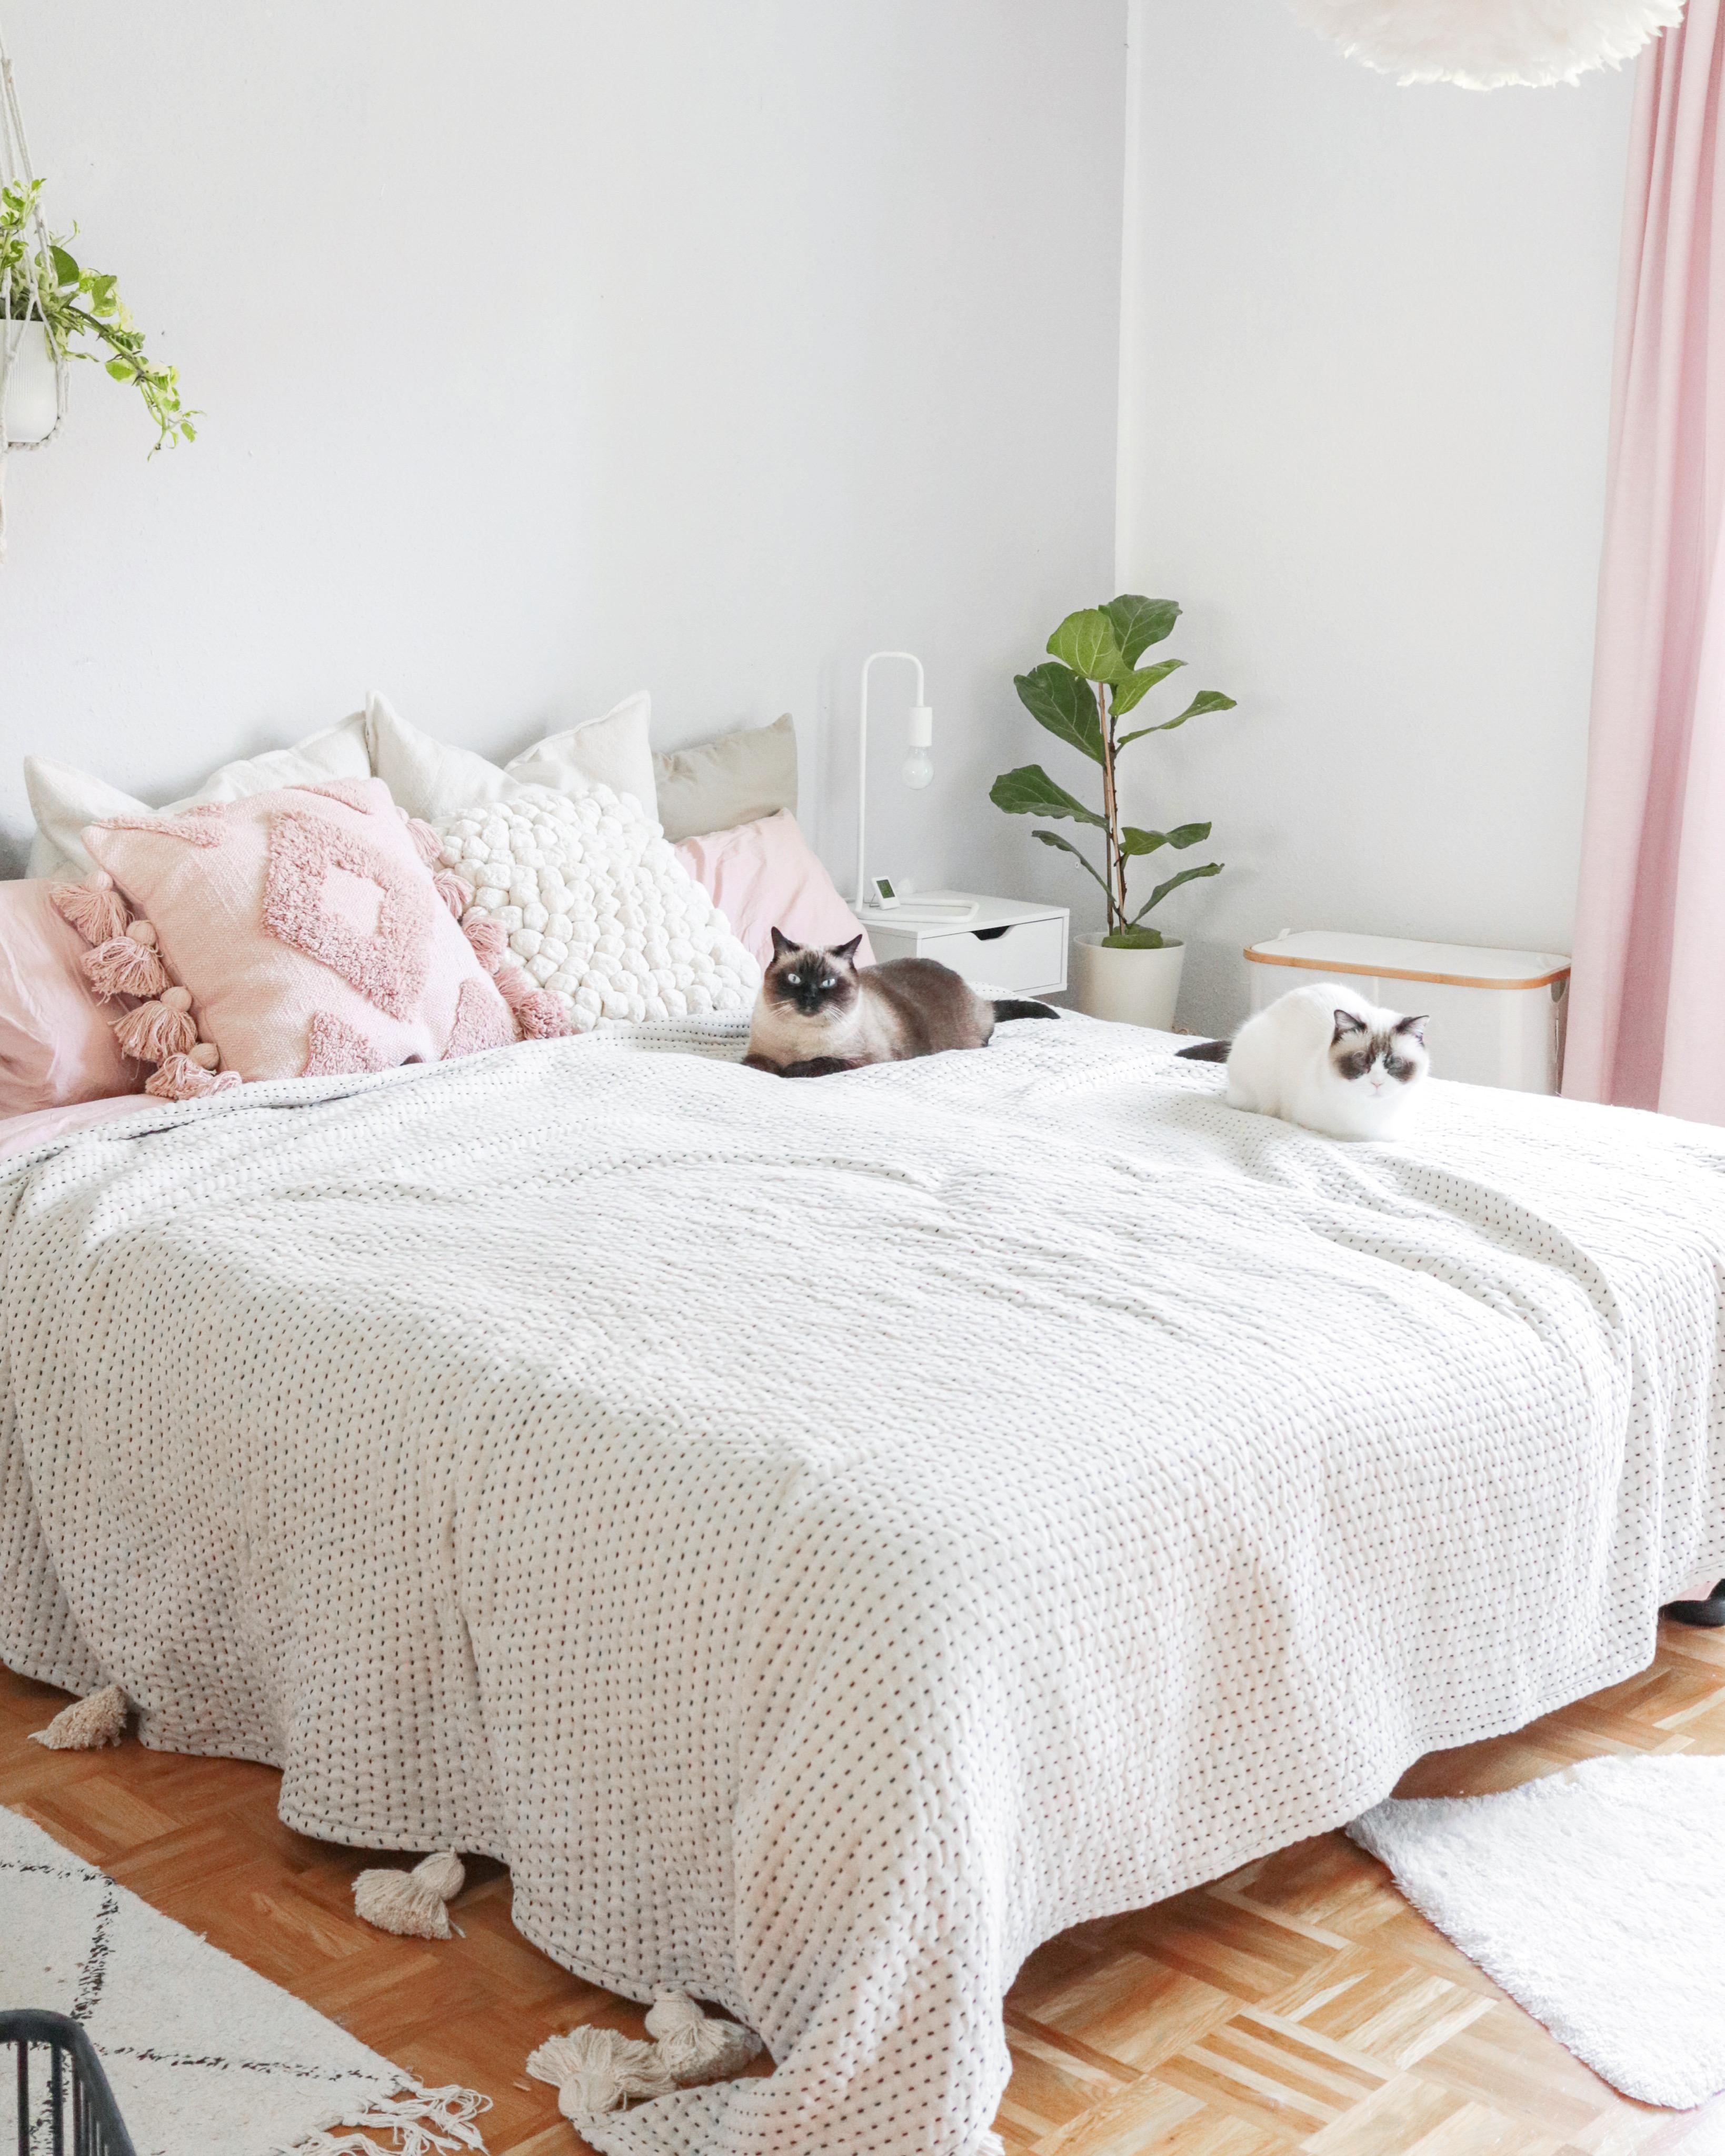 Cozy mood 🤍😻
#schlafzimmer #bedroom #cozyhome #schlafzimmerinspo #skandi #scandihome #cozy #bett #bettwäsche 